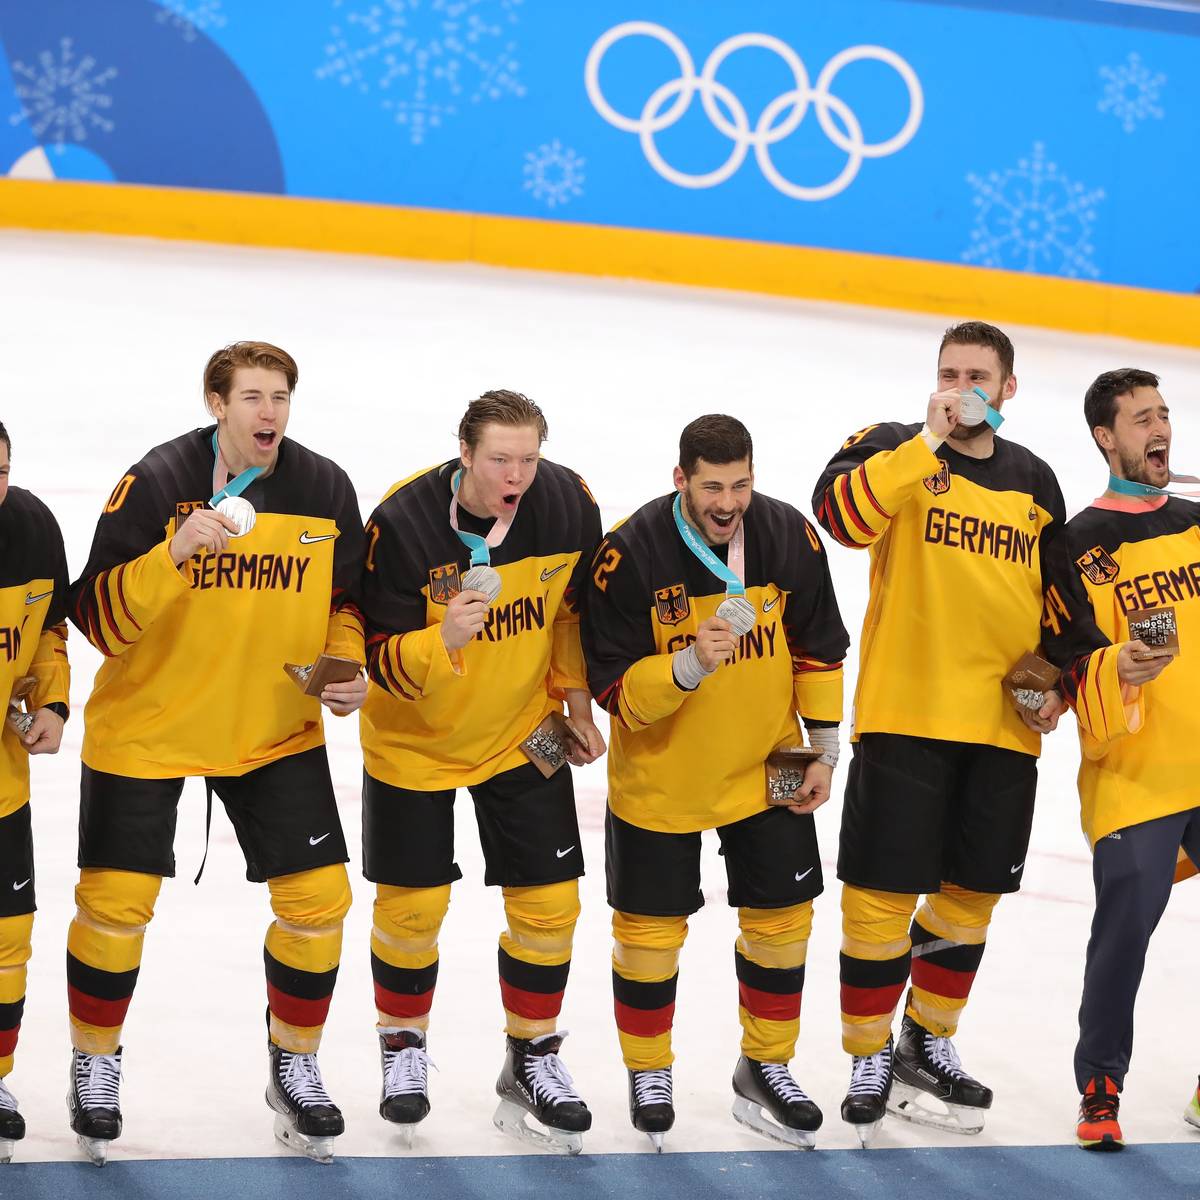 Olympia 2018, Deutschland verliert gegen Russland Eishockey-Finale